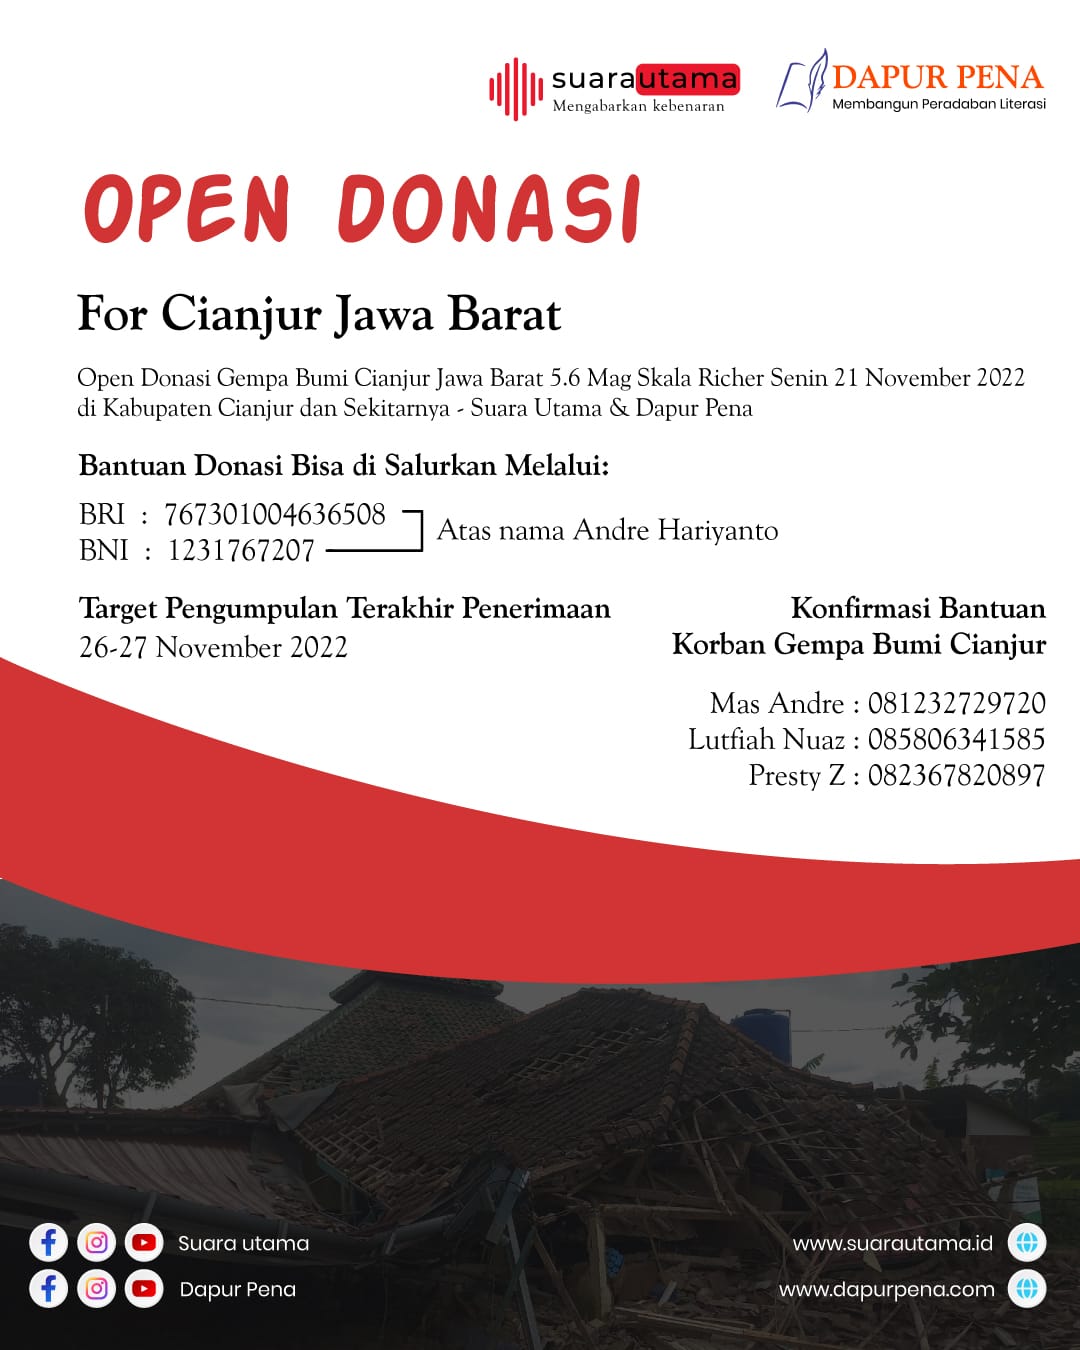 Yayasan Pusat Pembelajaran Nusantara, Lembaga AR Learning Center, Suara Utama dan Dapur Pena Membuka Open Donasi untuk Korban Gempa Bumi Cianjur. Foto/Flyer: Mas Andre/Fikri/Sekar (SUARA UTAMA).